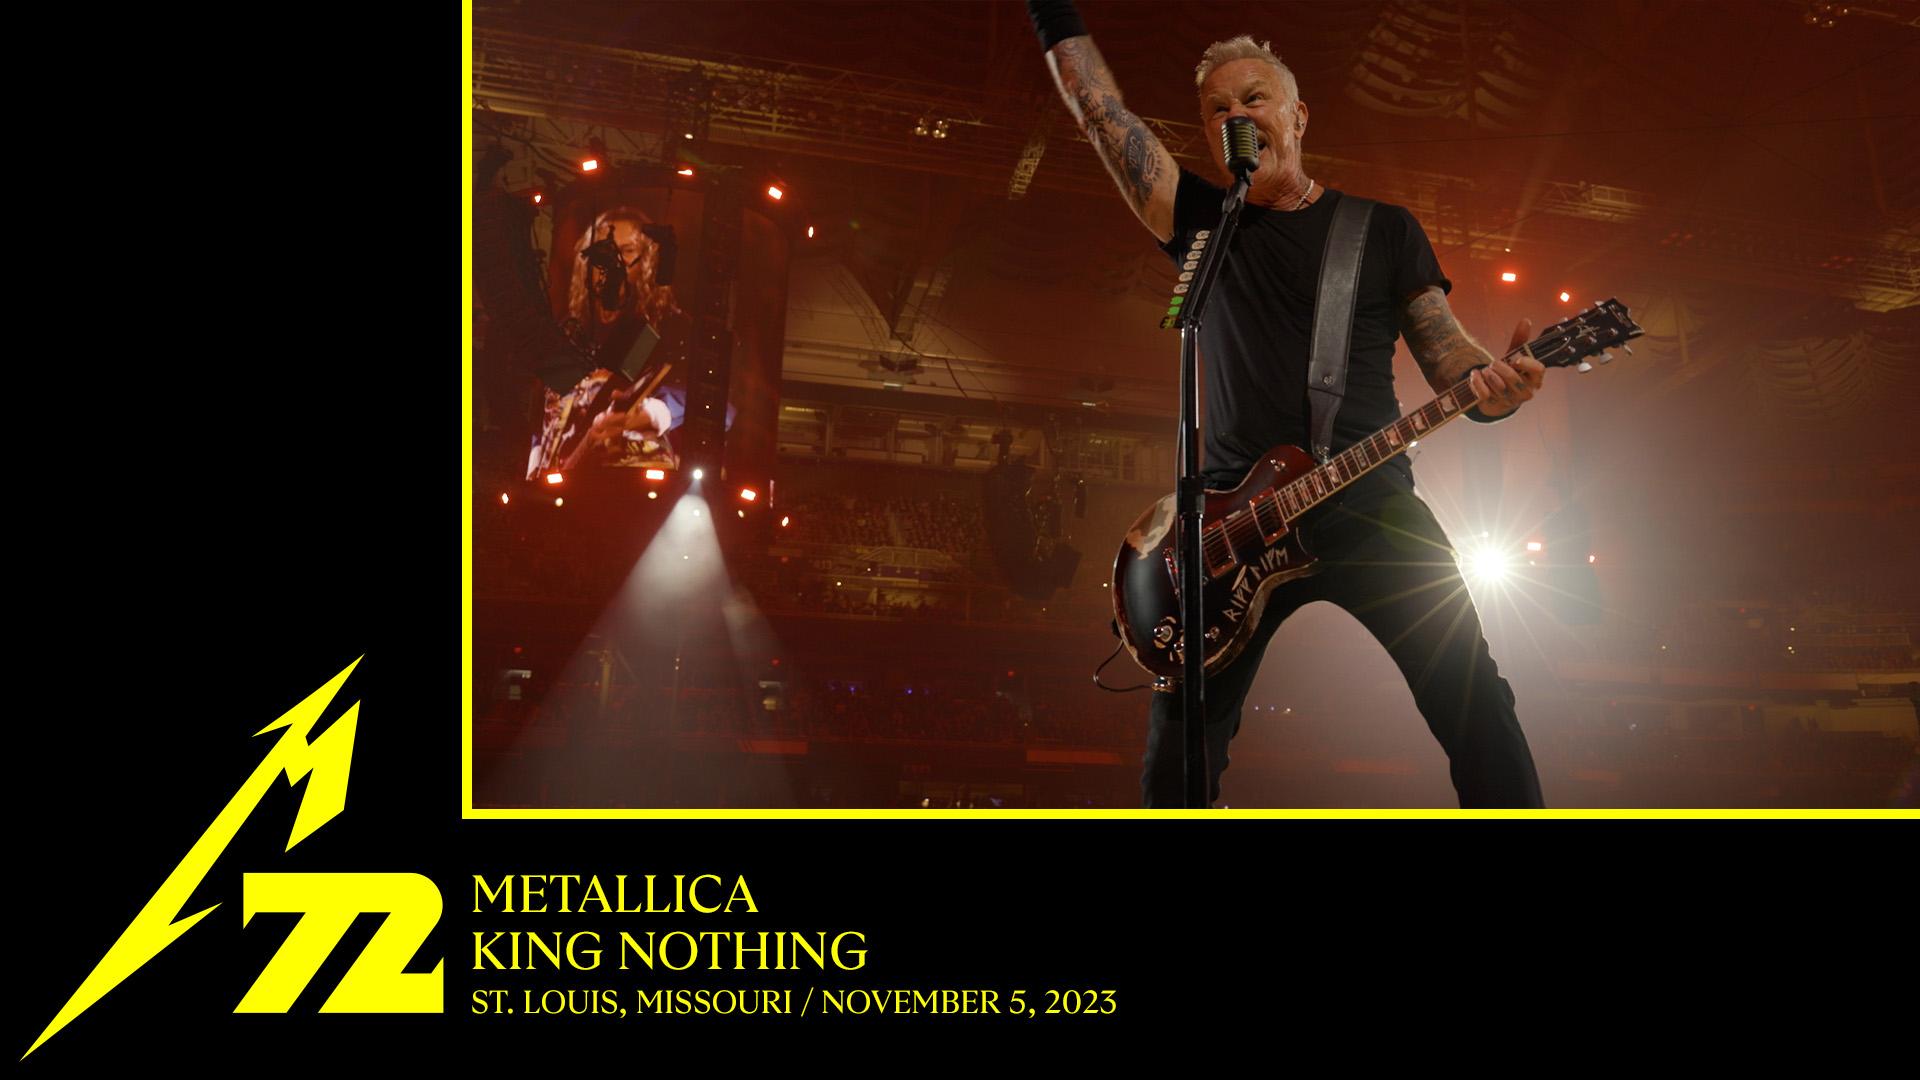 Metallica.com